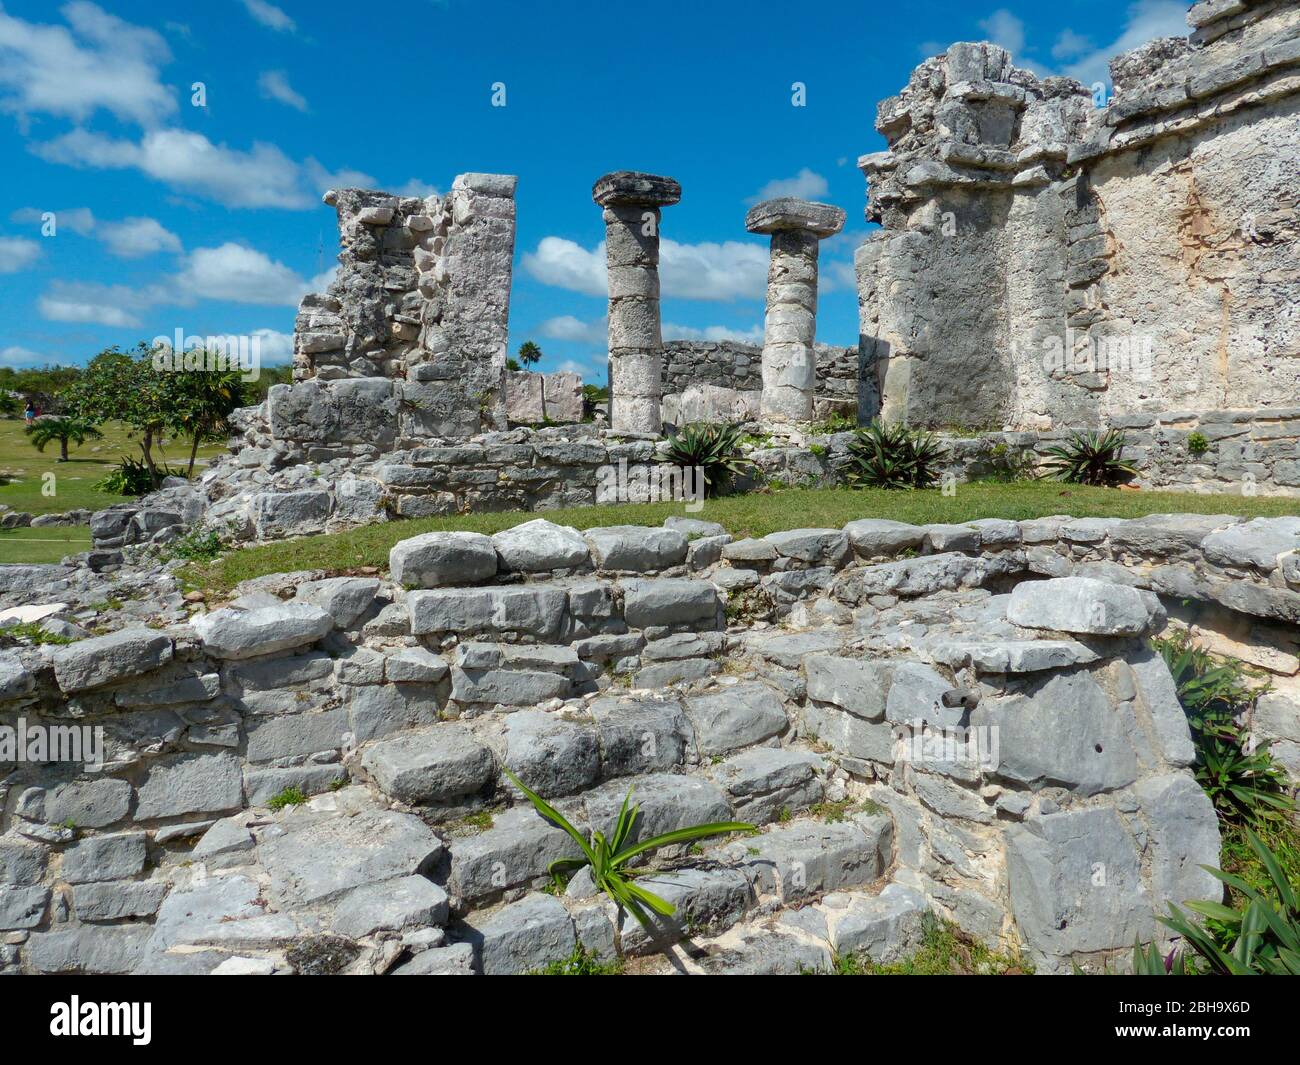 Ruines mayas à Tulum, ss le site d'une ville fortifiée maya pré-colombienne qui a servi de port principal pour Coba, dans l'état mexicain de Quintana Roo Banque D'Images